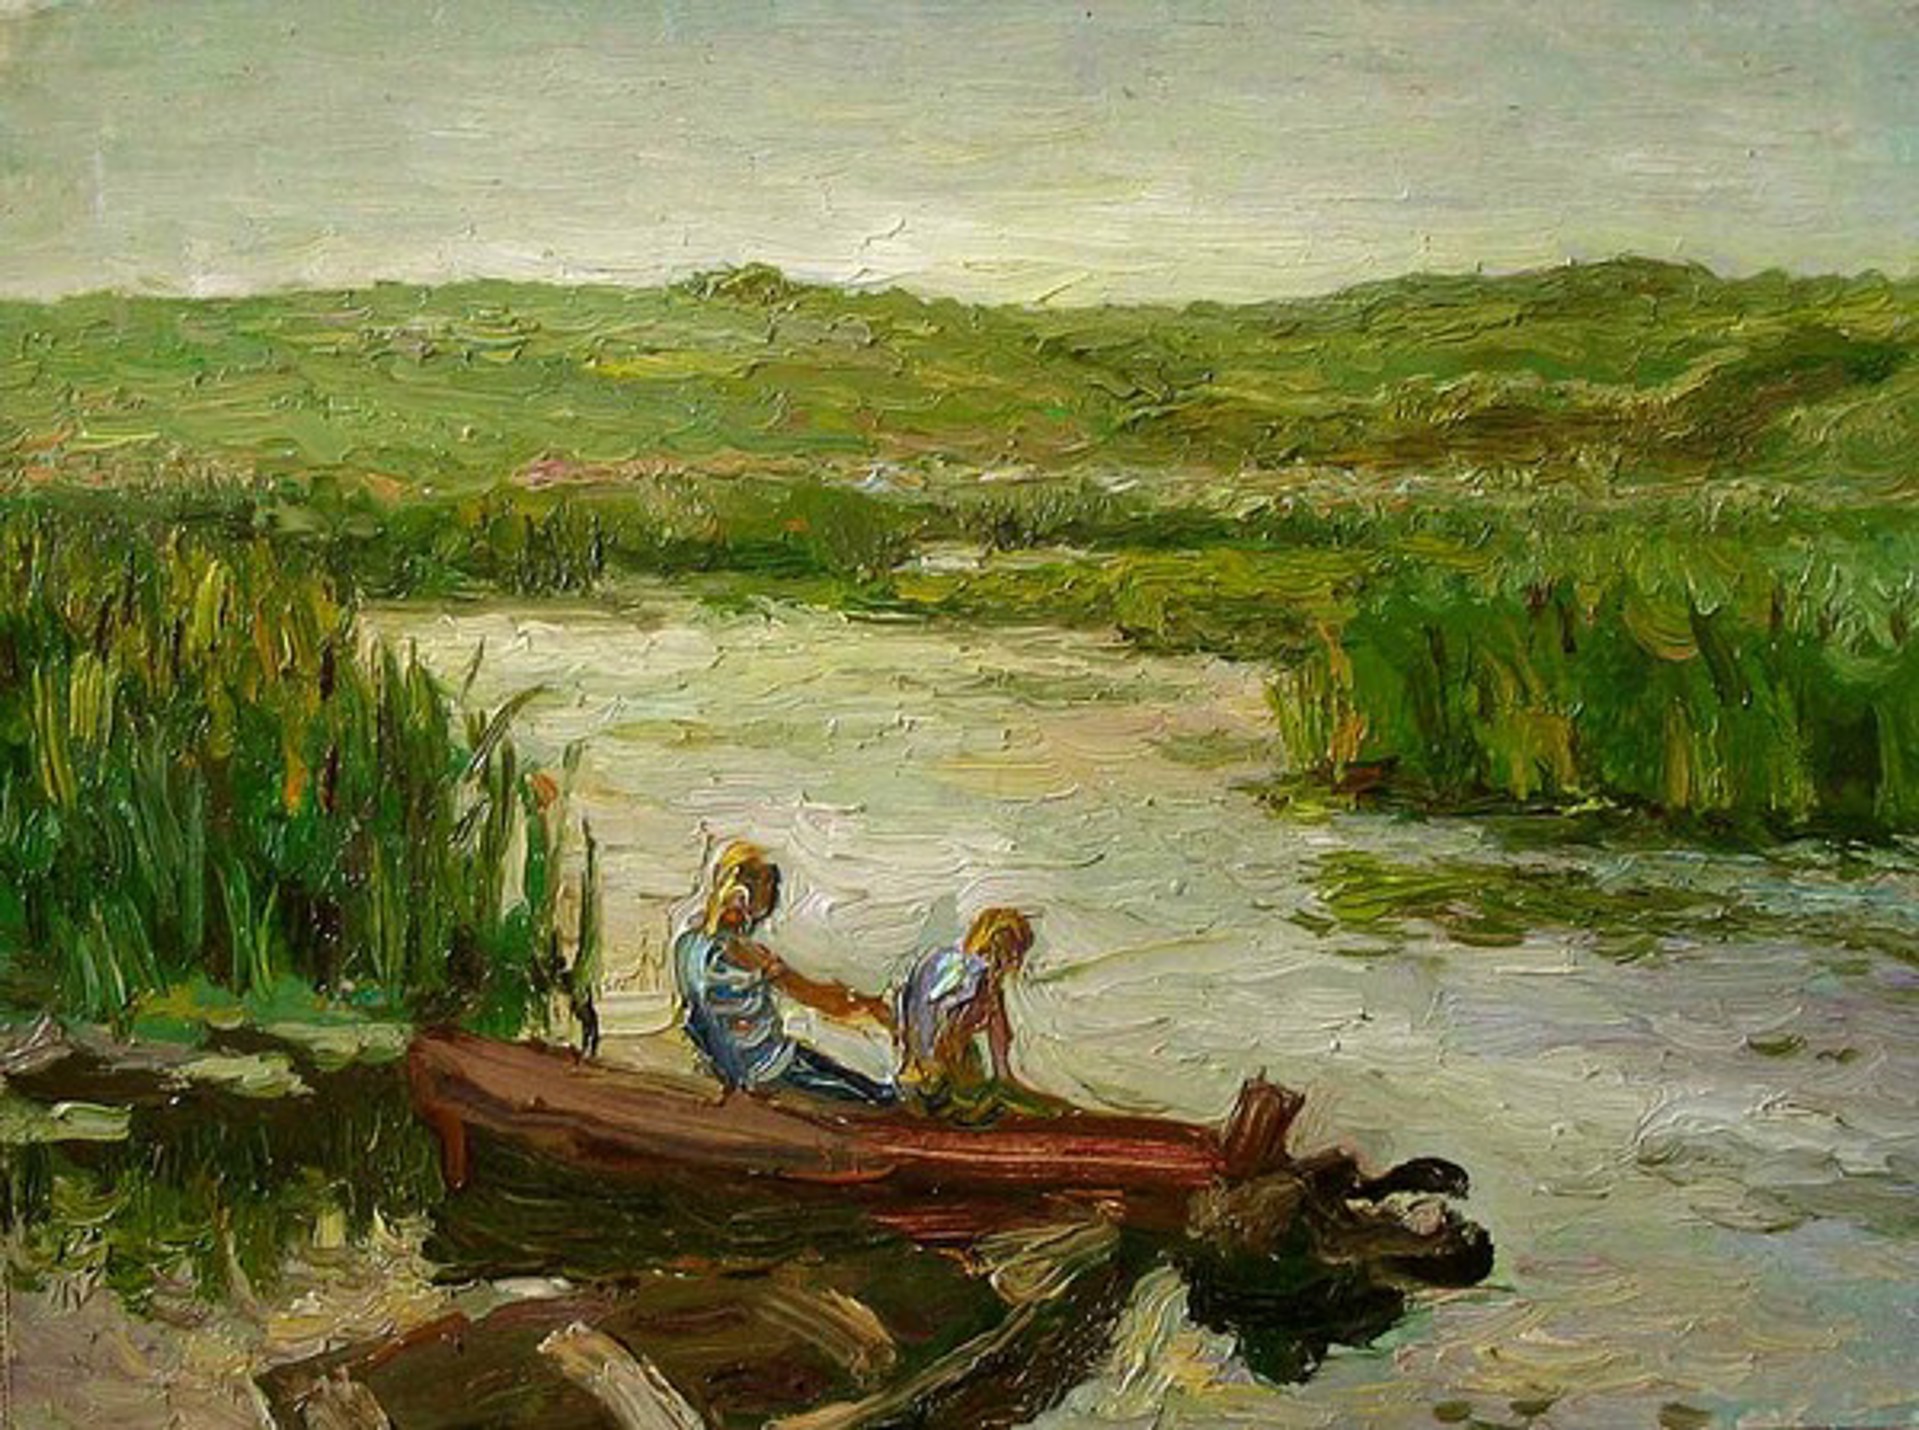 Boys in Boat by Ivan Vityuk